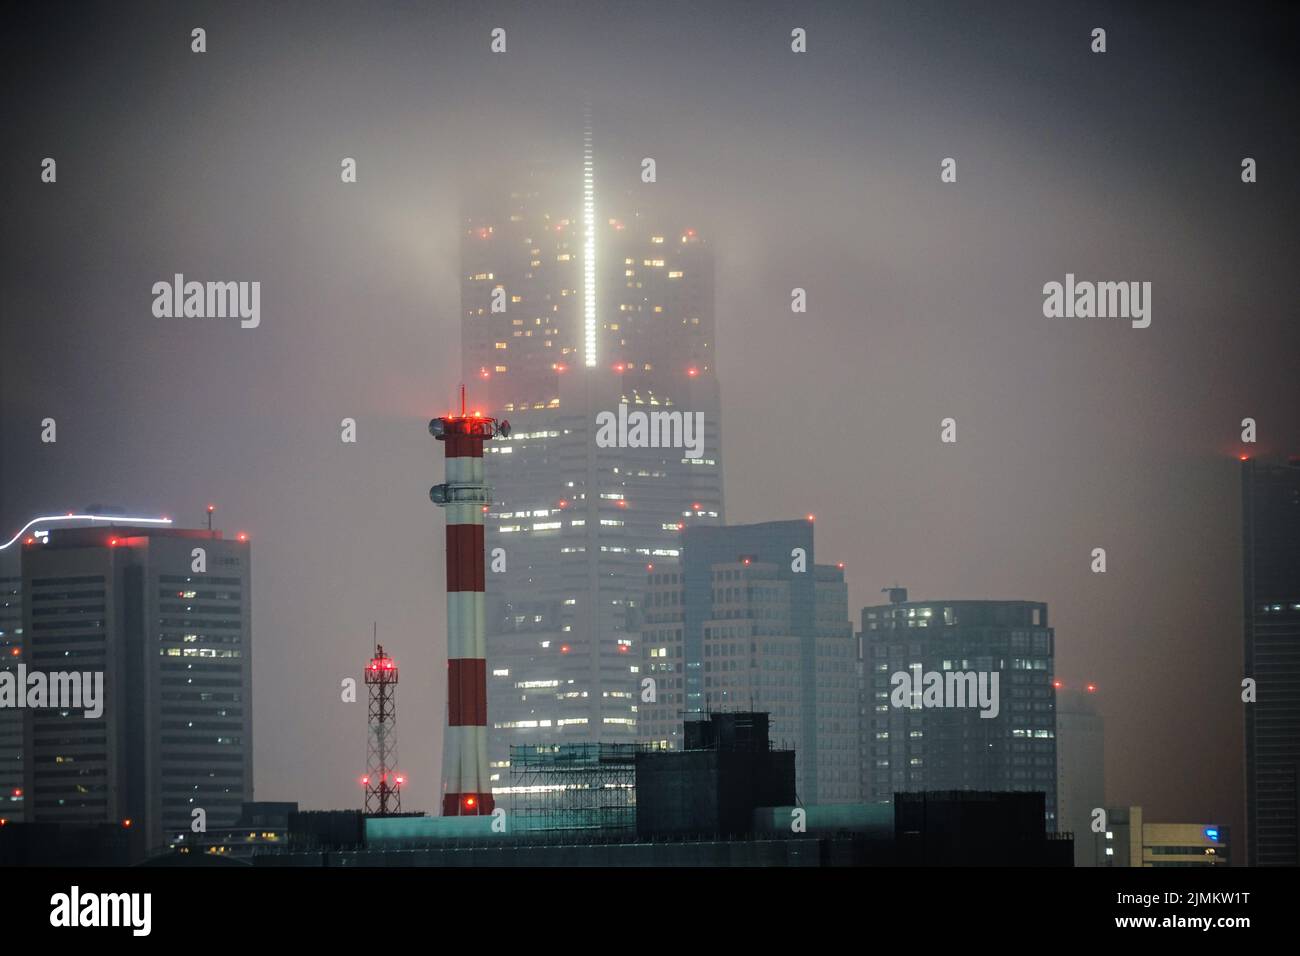 Shrouded in fog Yokohama Landmark Tower Stock Photo